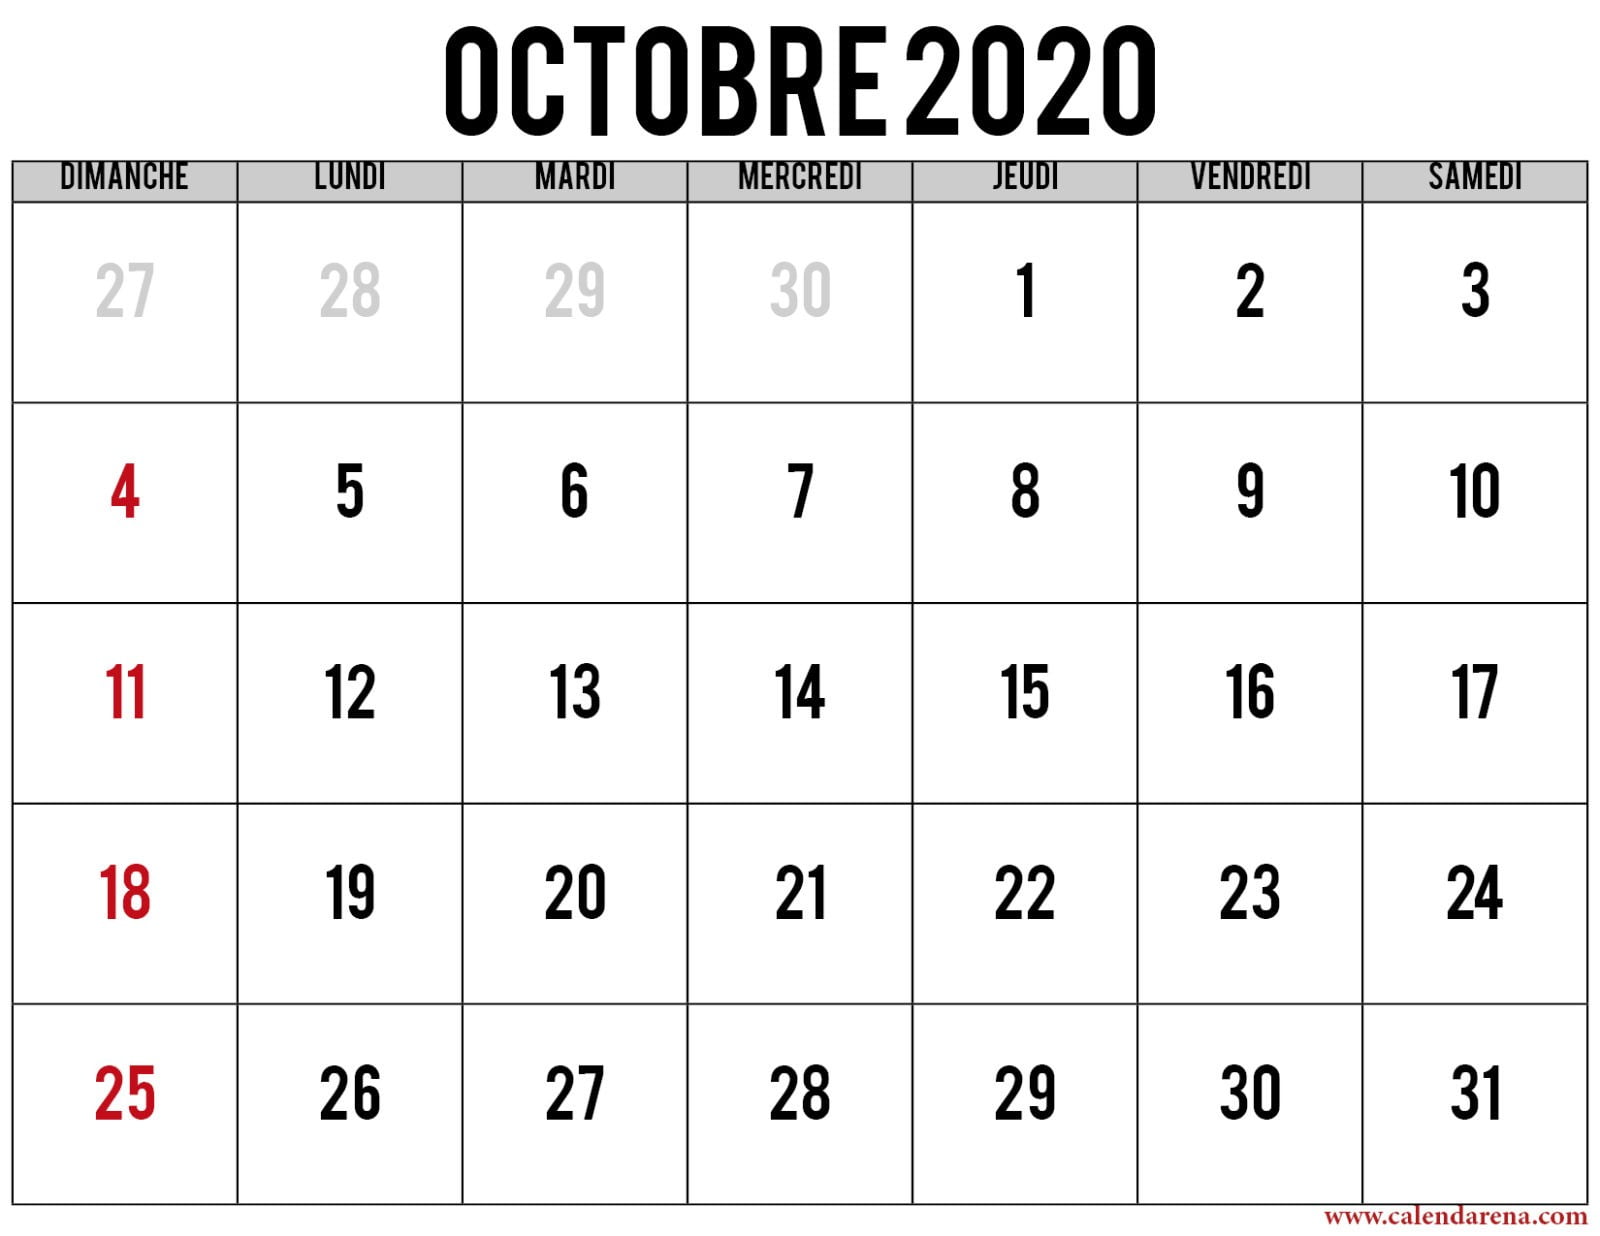  Calendrier  octobre  2022  imprimer  Calendarena